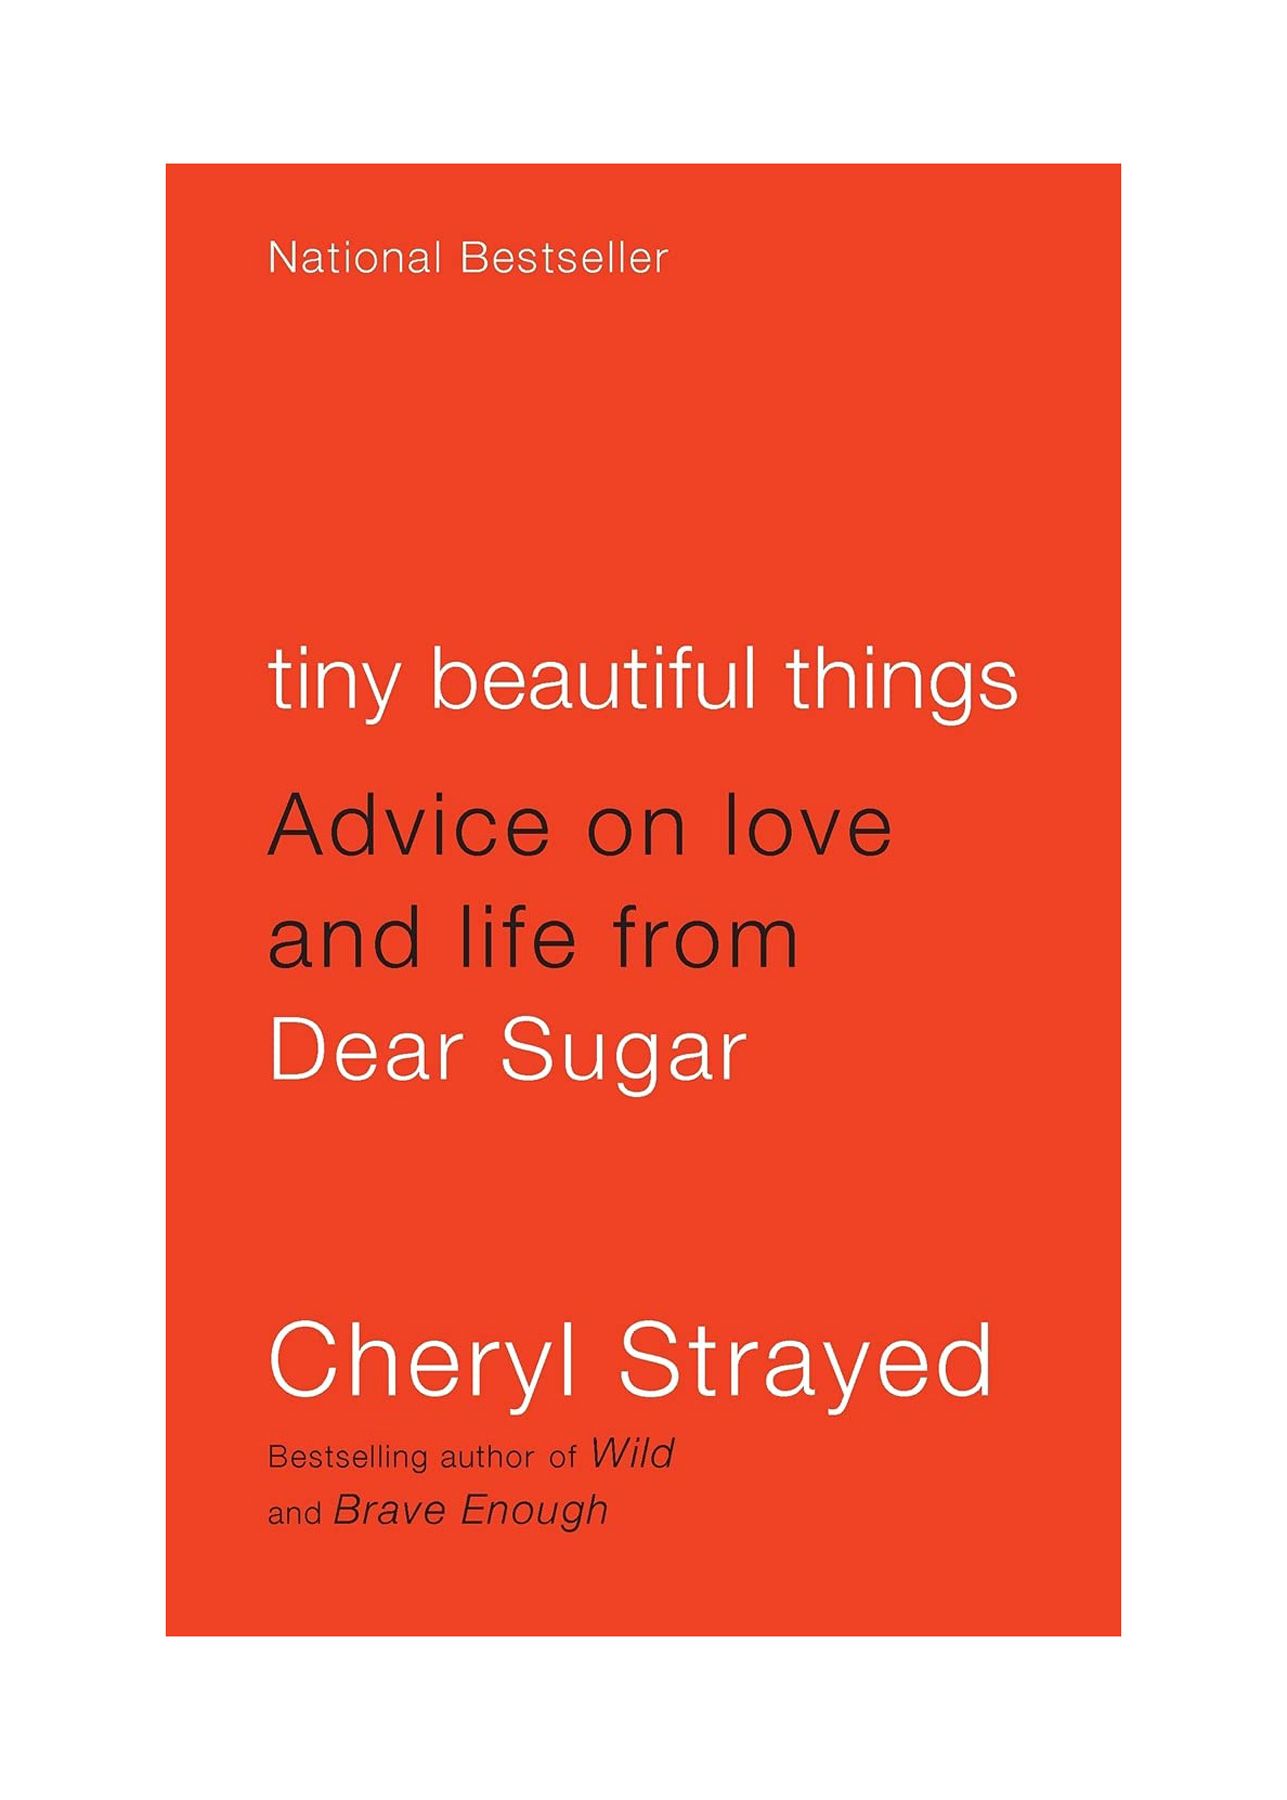 Livros para separações: pequenas coisas bonitas: conselhos sobre amor e vida de Dear Sugar por Cheryl Strayed